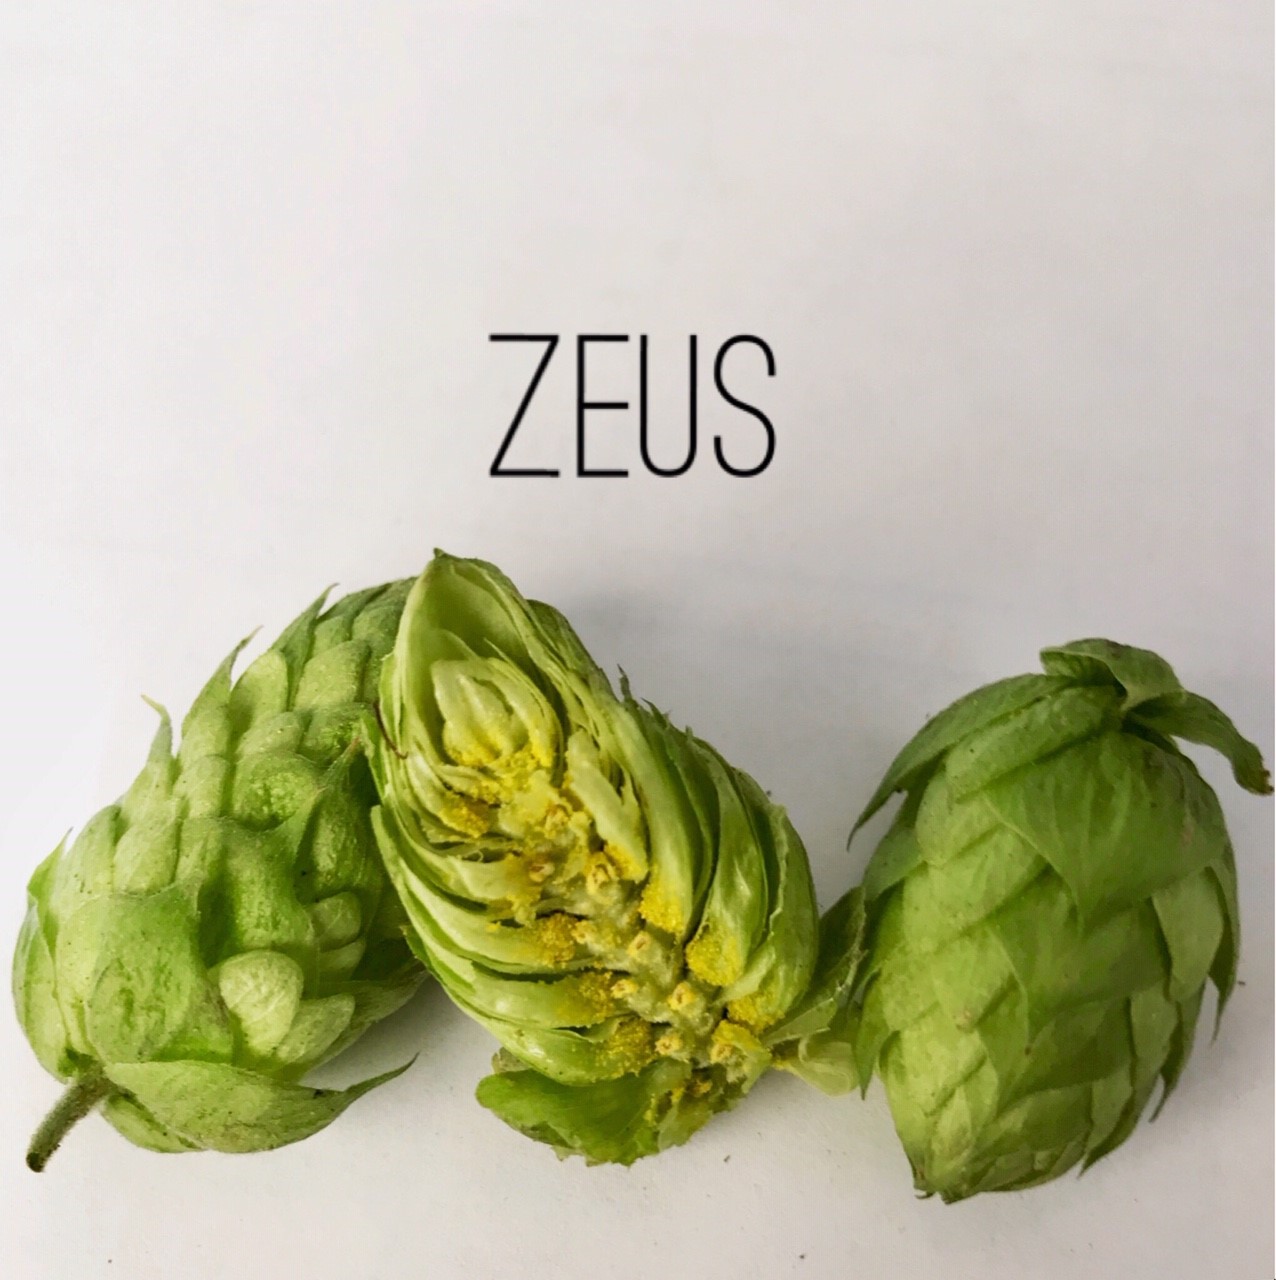 Zeus Hops